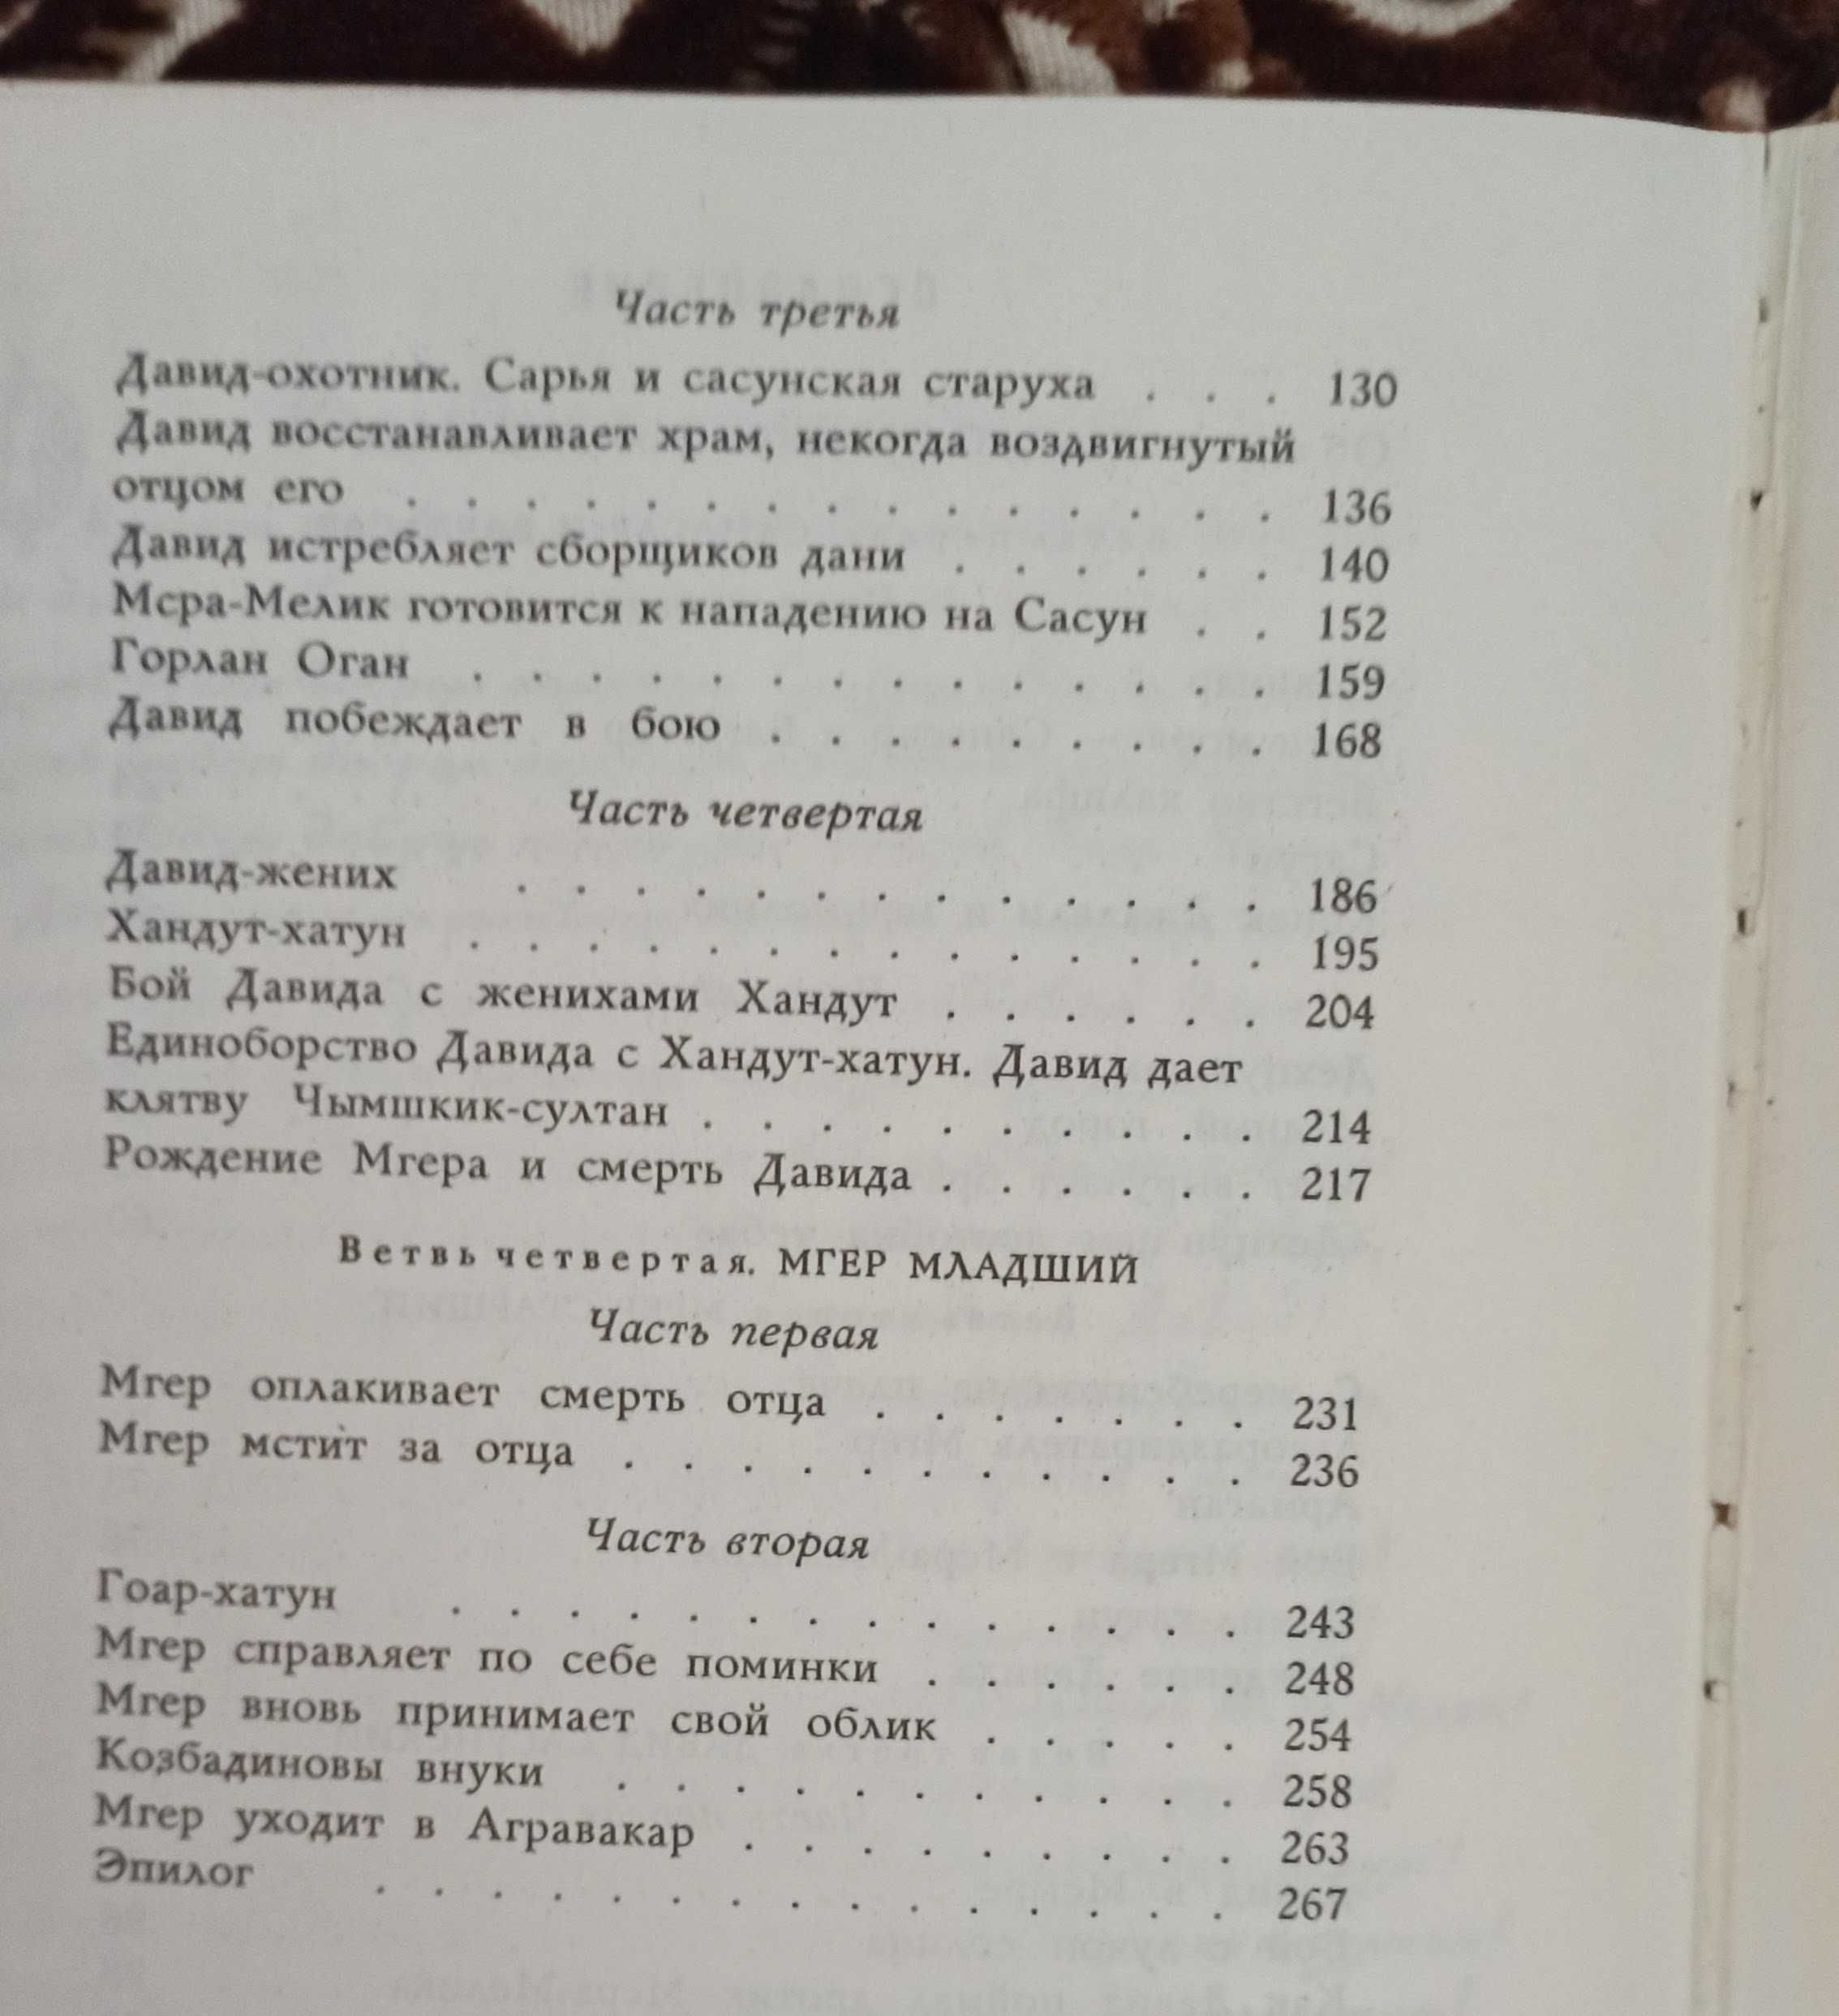 Наири Зарьян "Давид Сасунский" 1973 рік видання